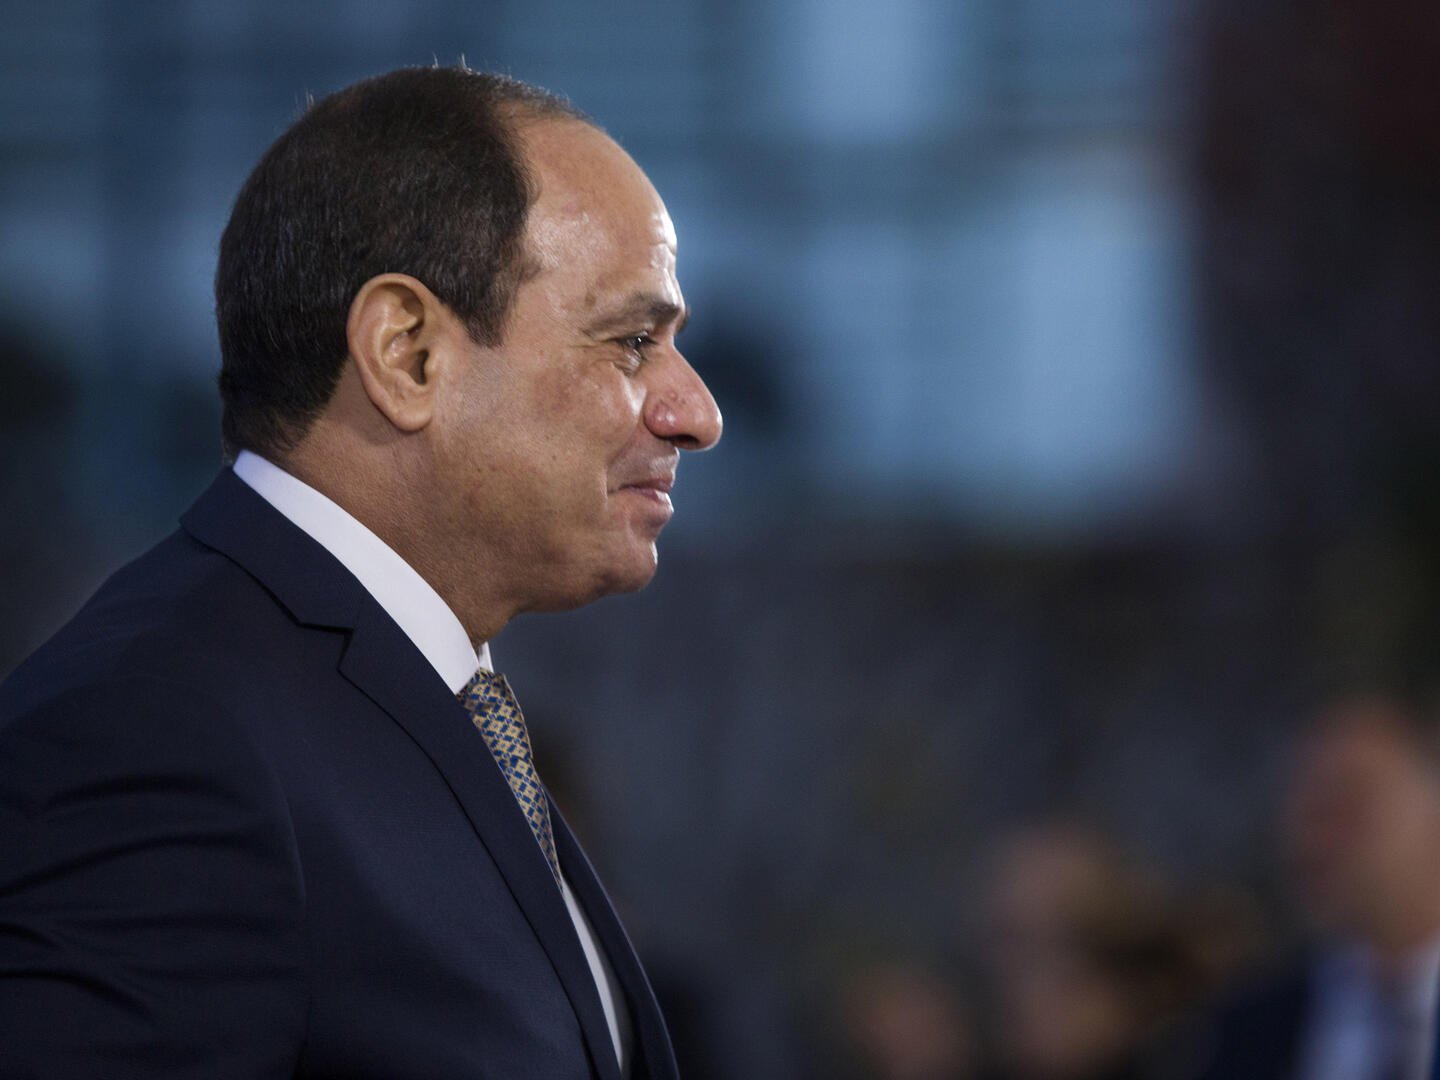 السيسي يصدر قرارا بإنشاء مؤسسة عسكرية جديدة في مصر